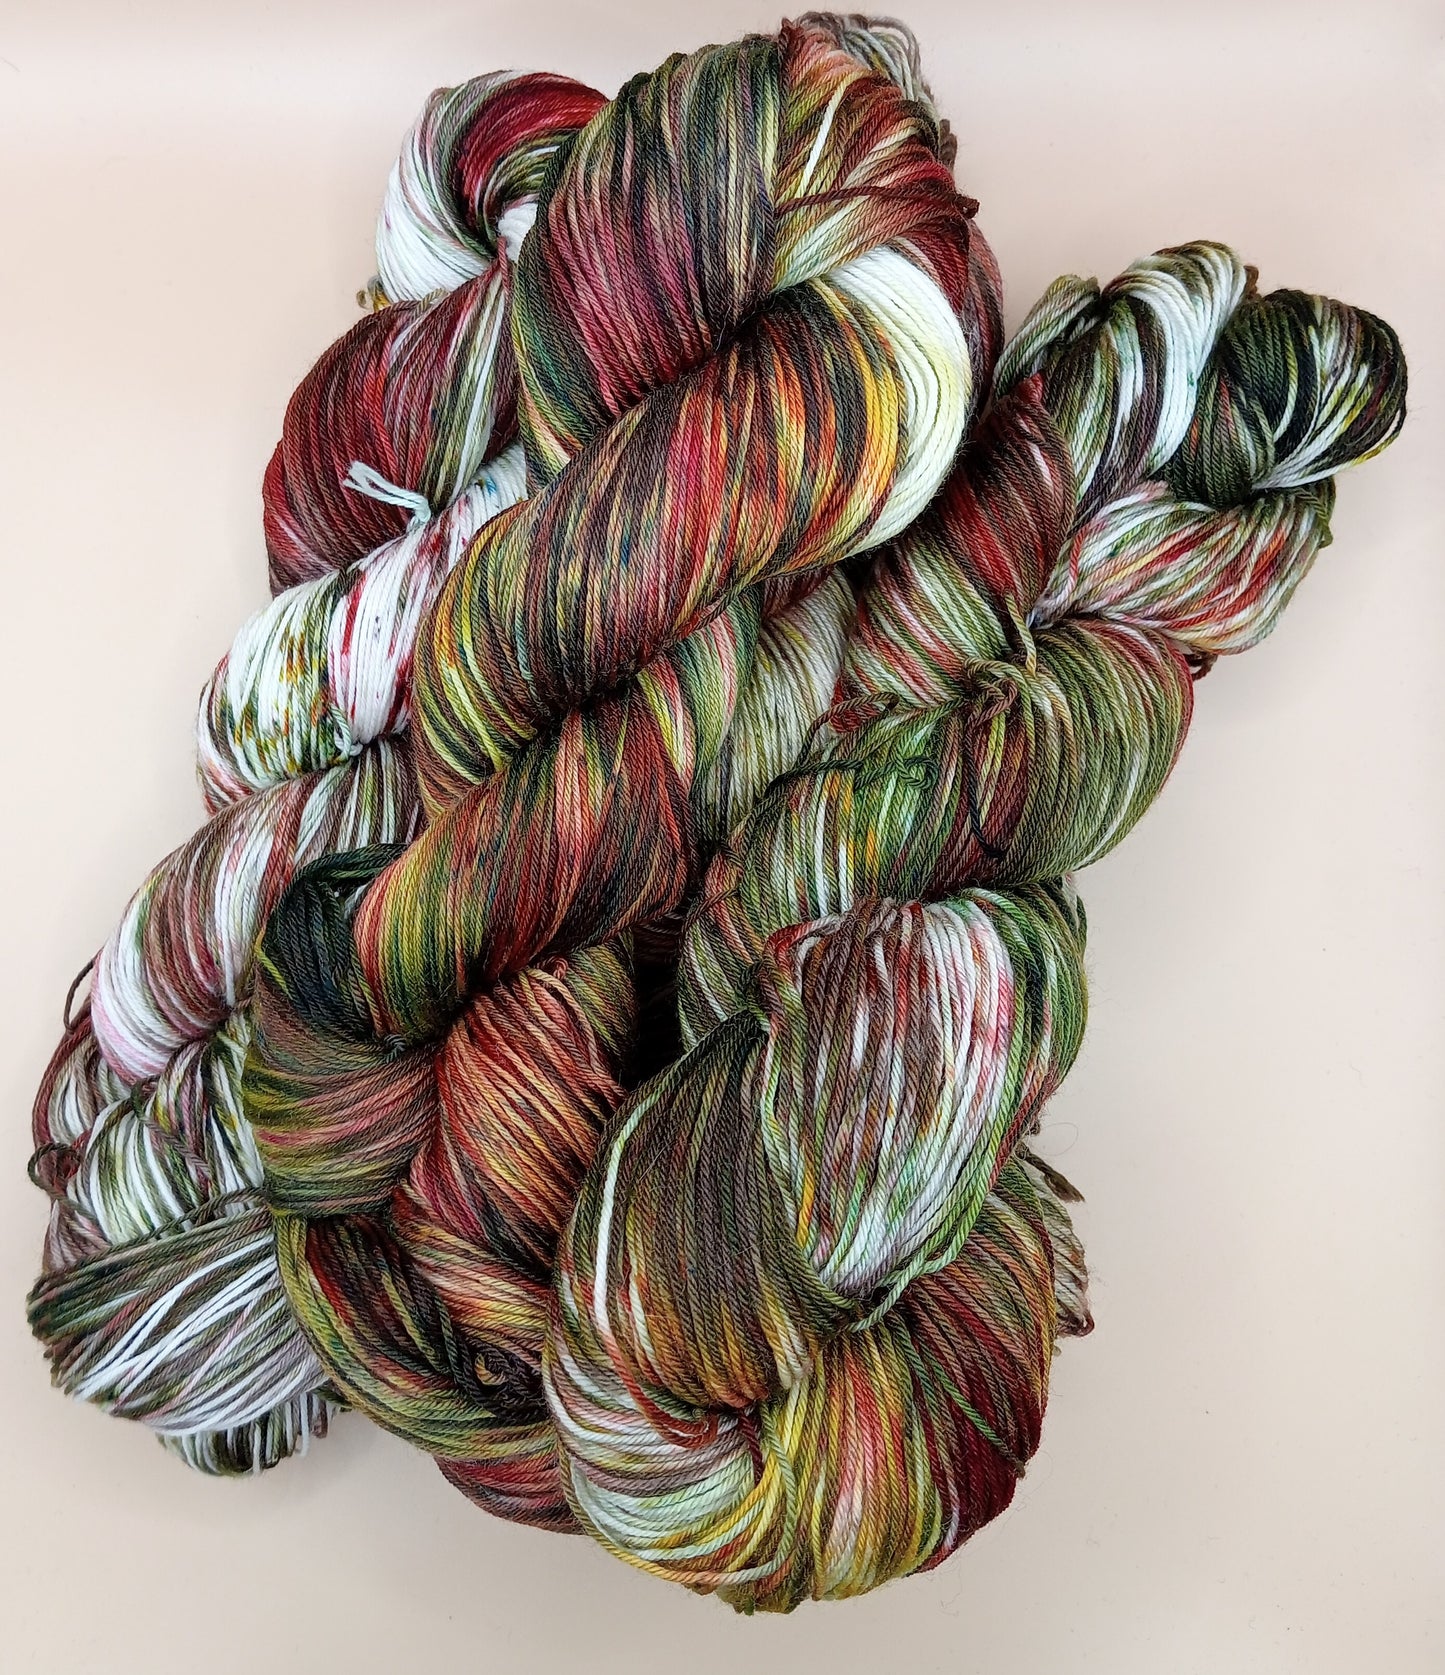 100G hand dyed Merino/Nylon luxury sock yarn - "Rustic Retreat"